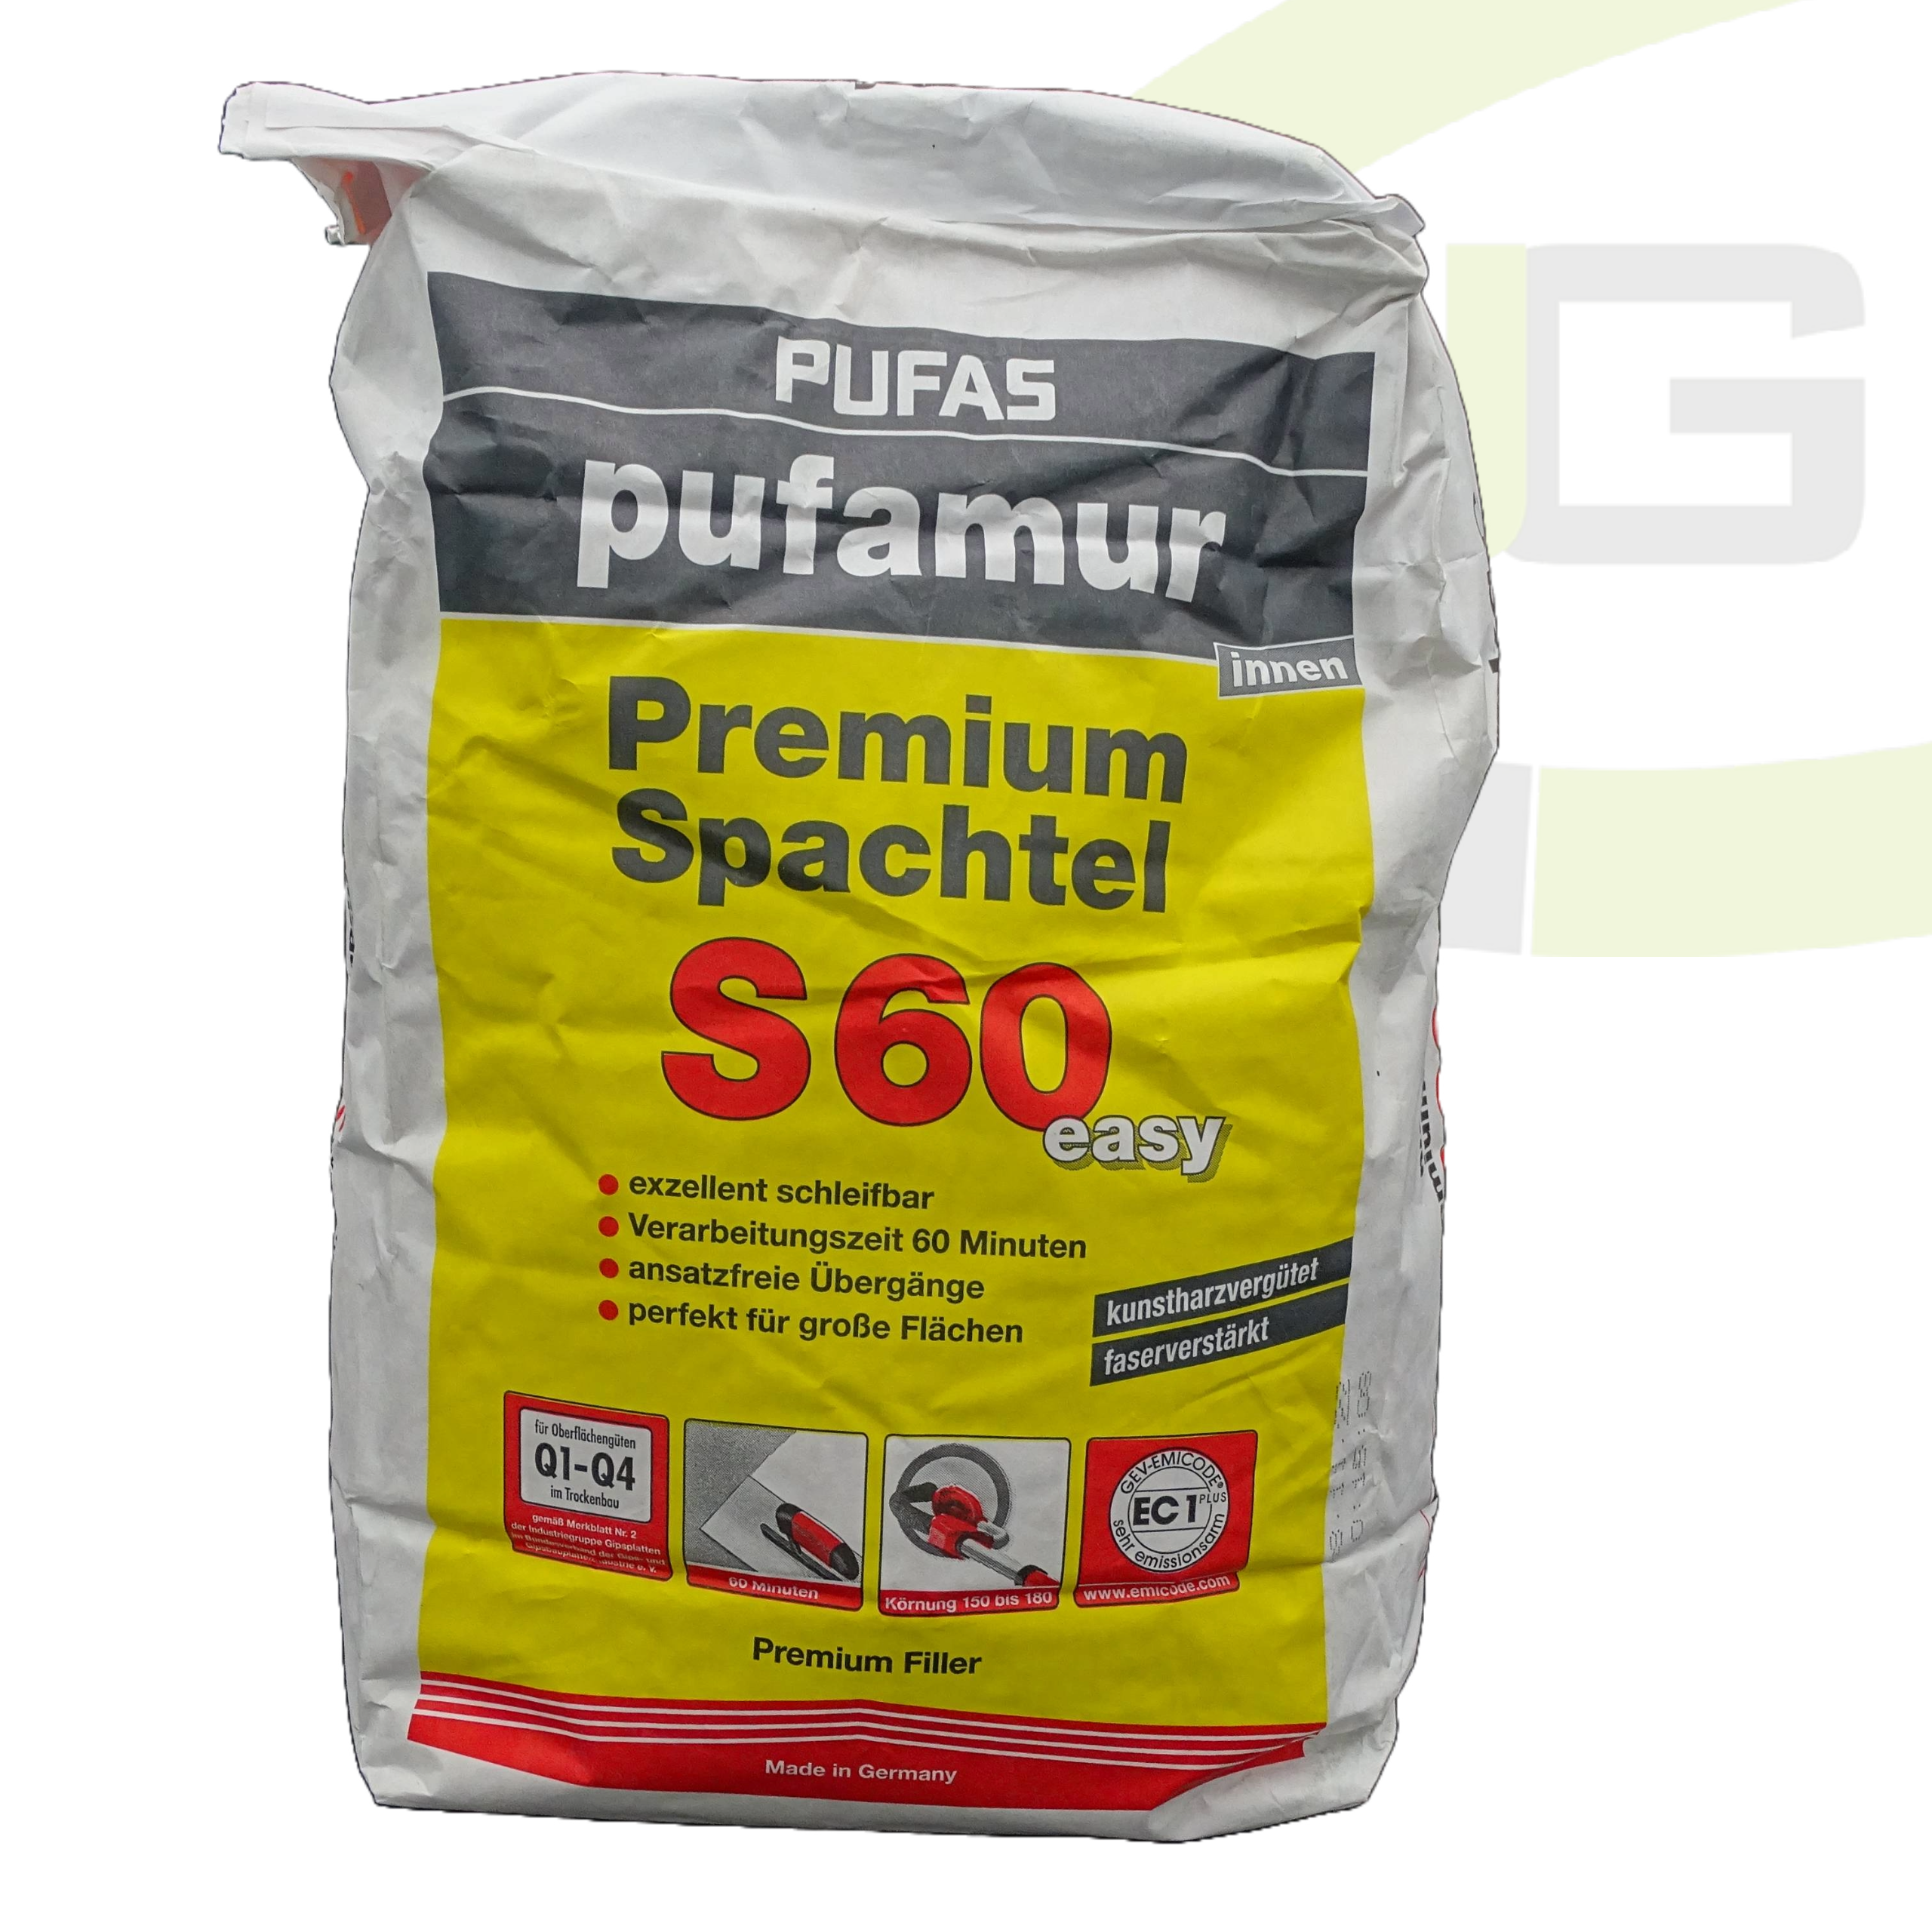 Pufas pufamur Premium-Spachtel S60 easy - 10 KG / Innen-Spachtelmasse / leicht schleifbar